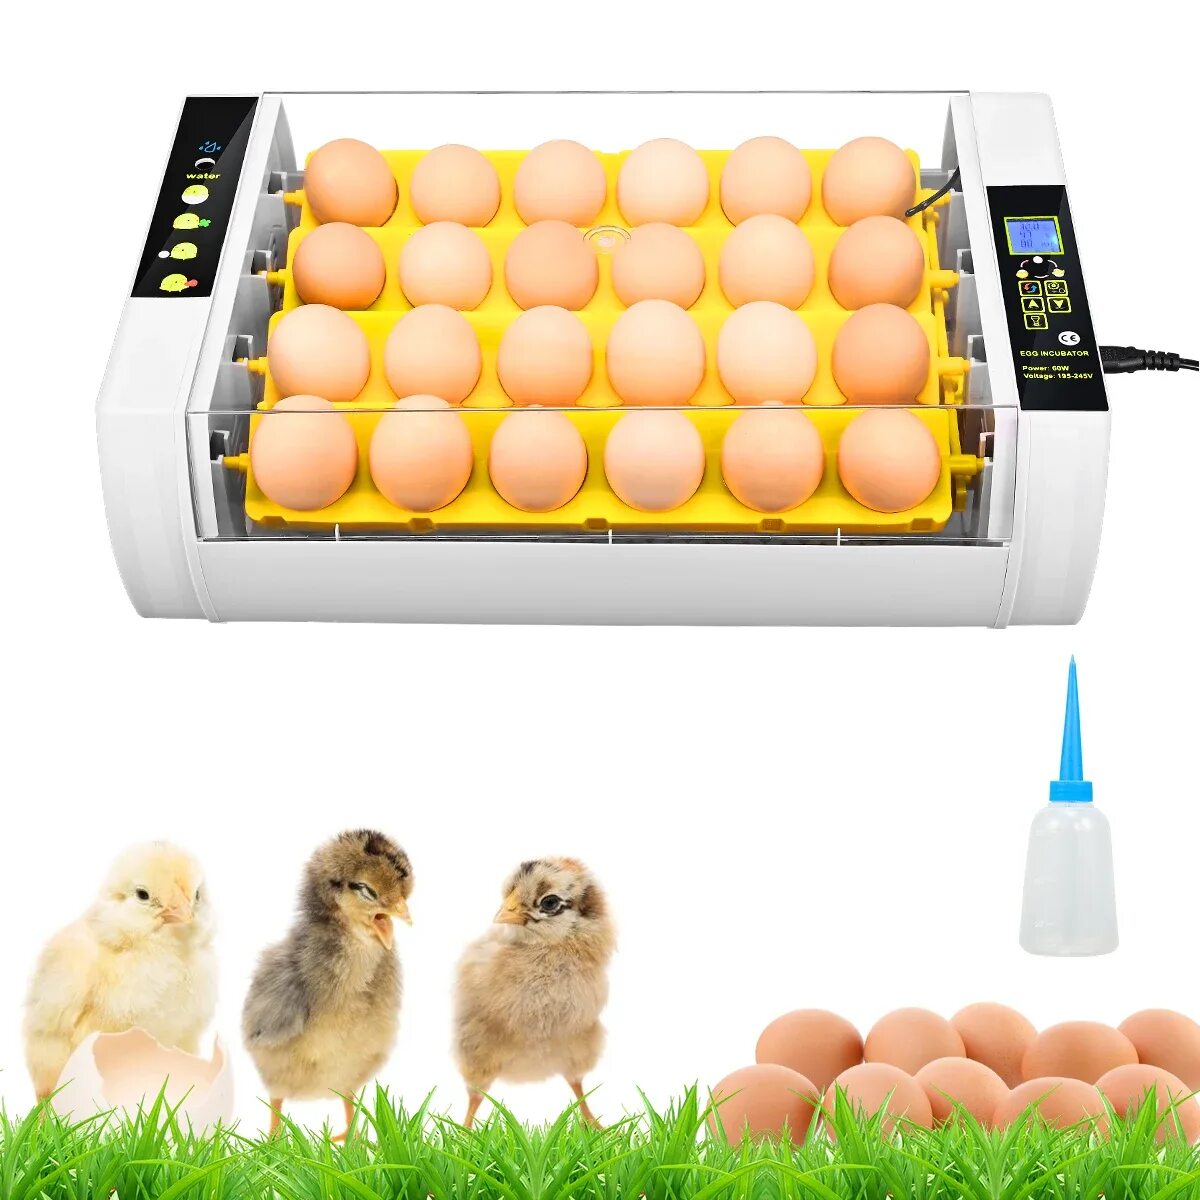 Инкубаторы автоматический недорого. Инкубатор Egg incubator. Инкубатор для яиц Egg incubator QC Pass 04. Fully Automatic Egg incubator. Инкубатор для яиц fully Automatic Egg Incubato.